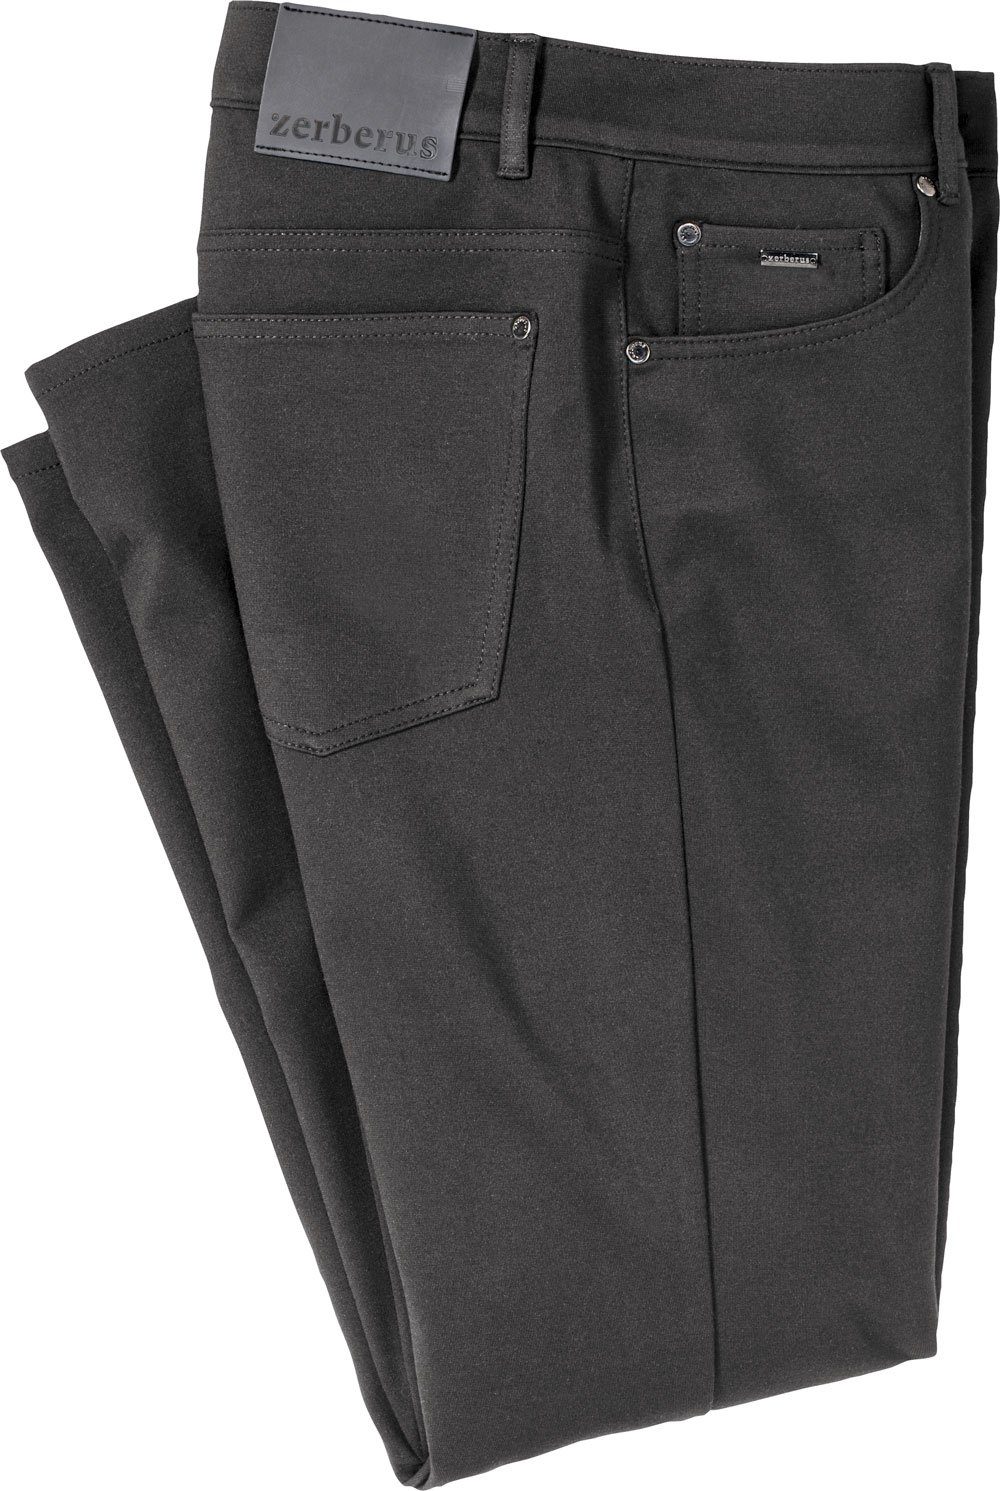 Jerseyhose schwarz 5-Pocket-Stil lässigen Passform, Zerberus im perfekte